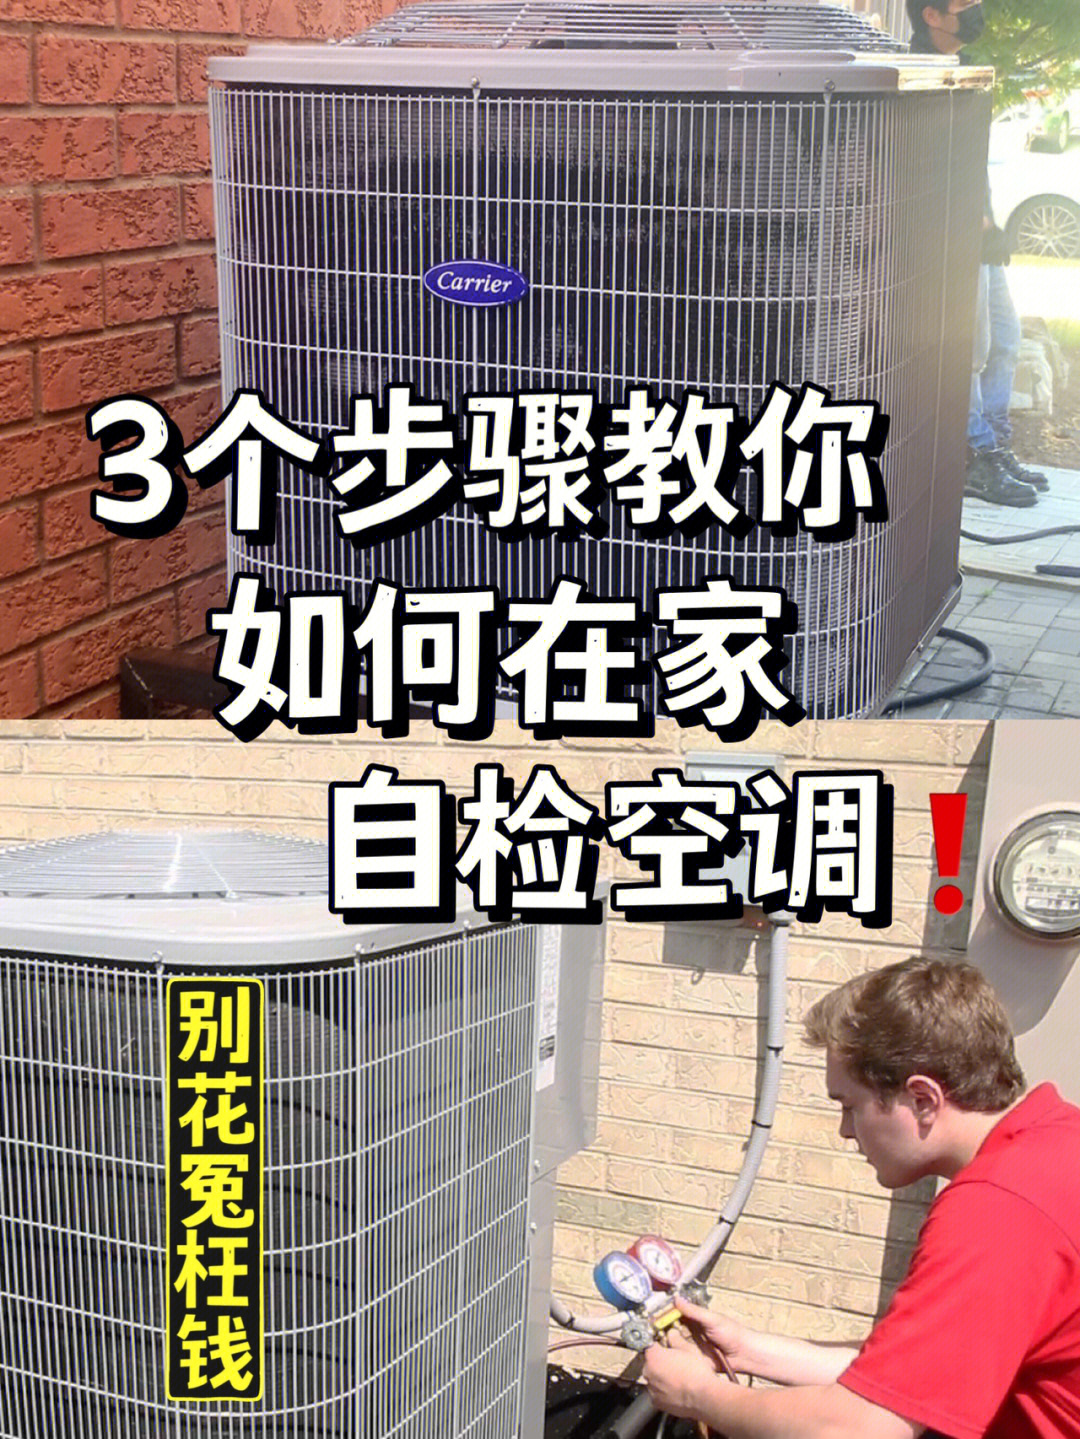 旧空调安装步骤图解图片